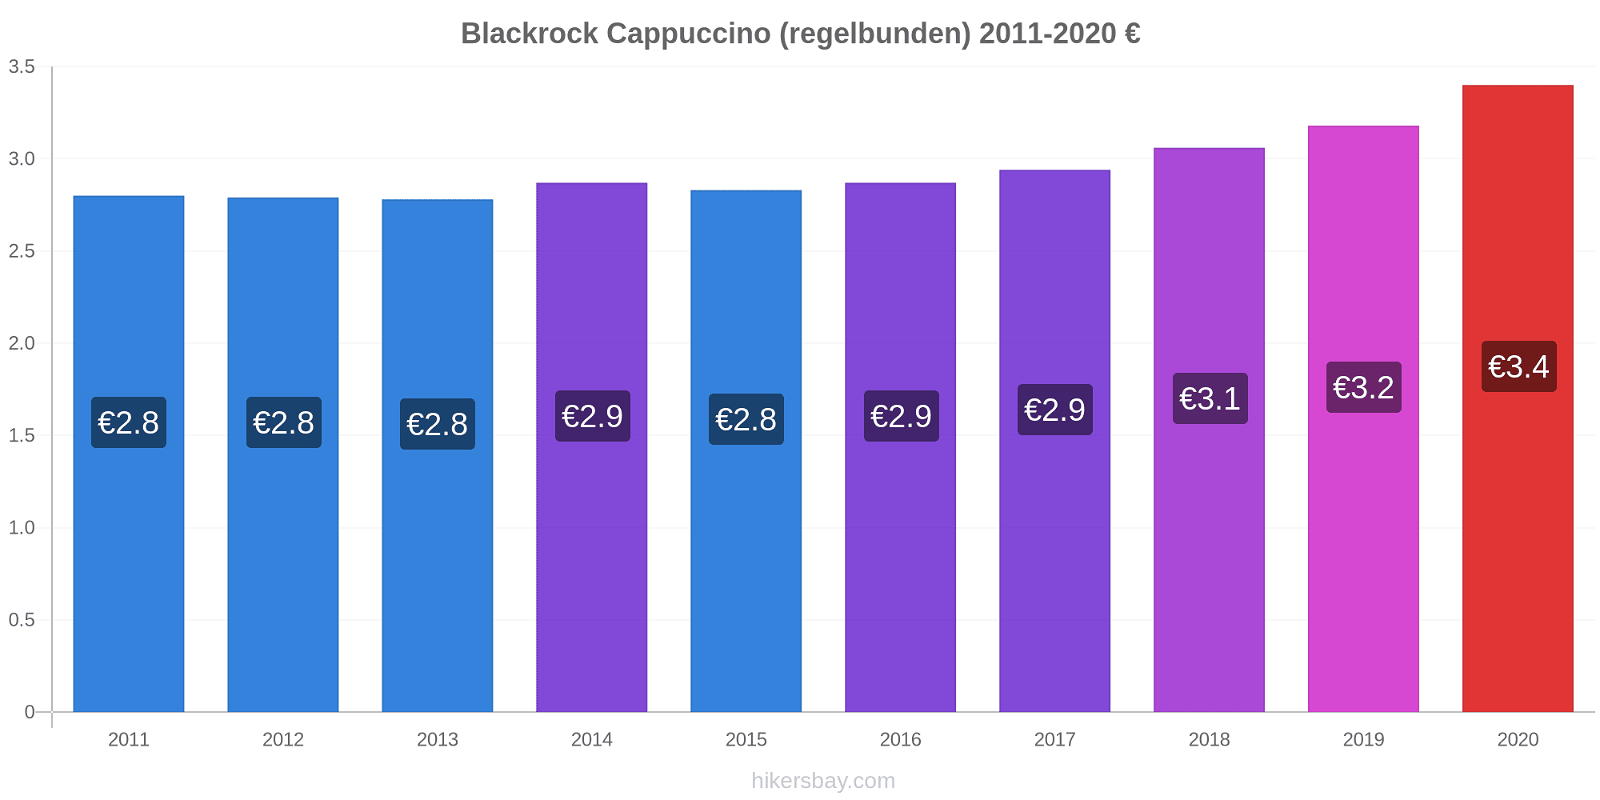 Blackrock prisförändringar Cappuccino (regelbunden) hikersbay.com